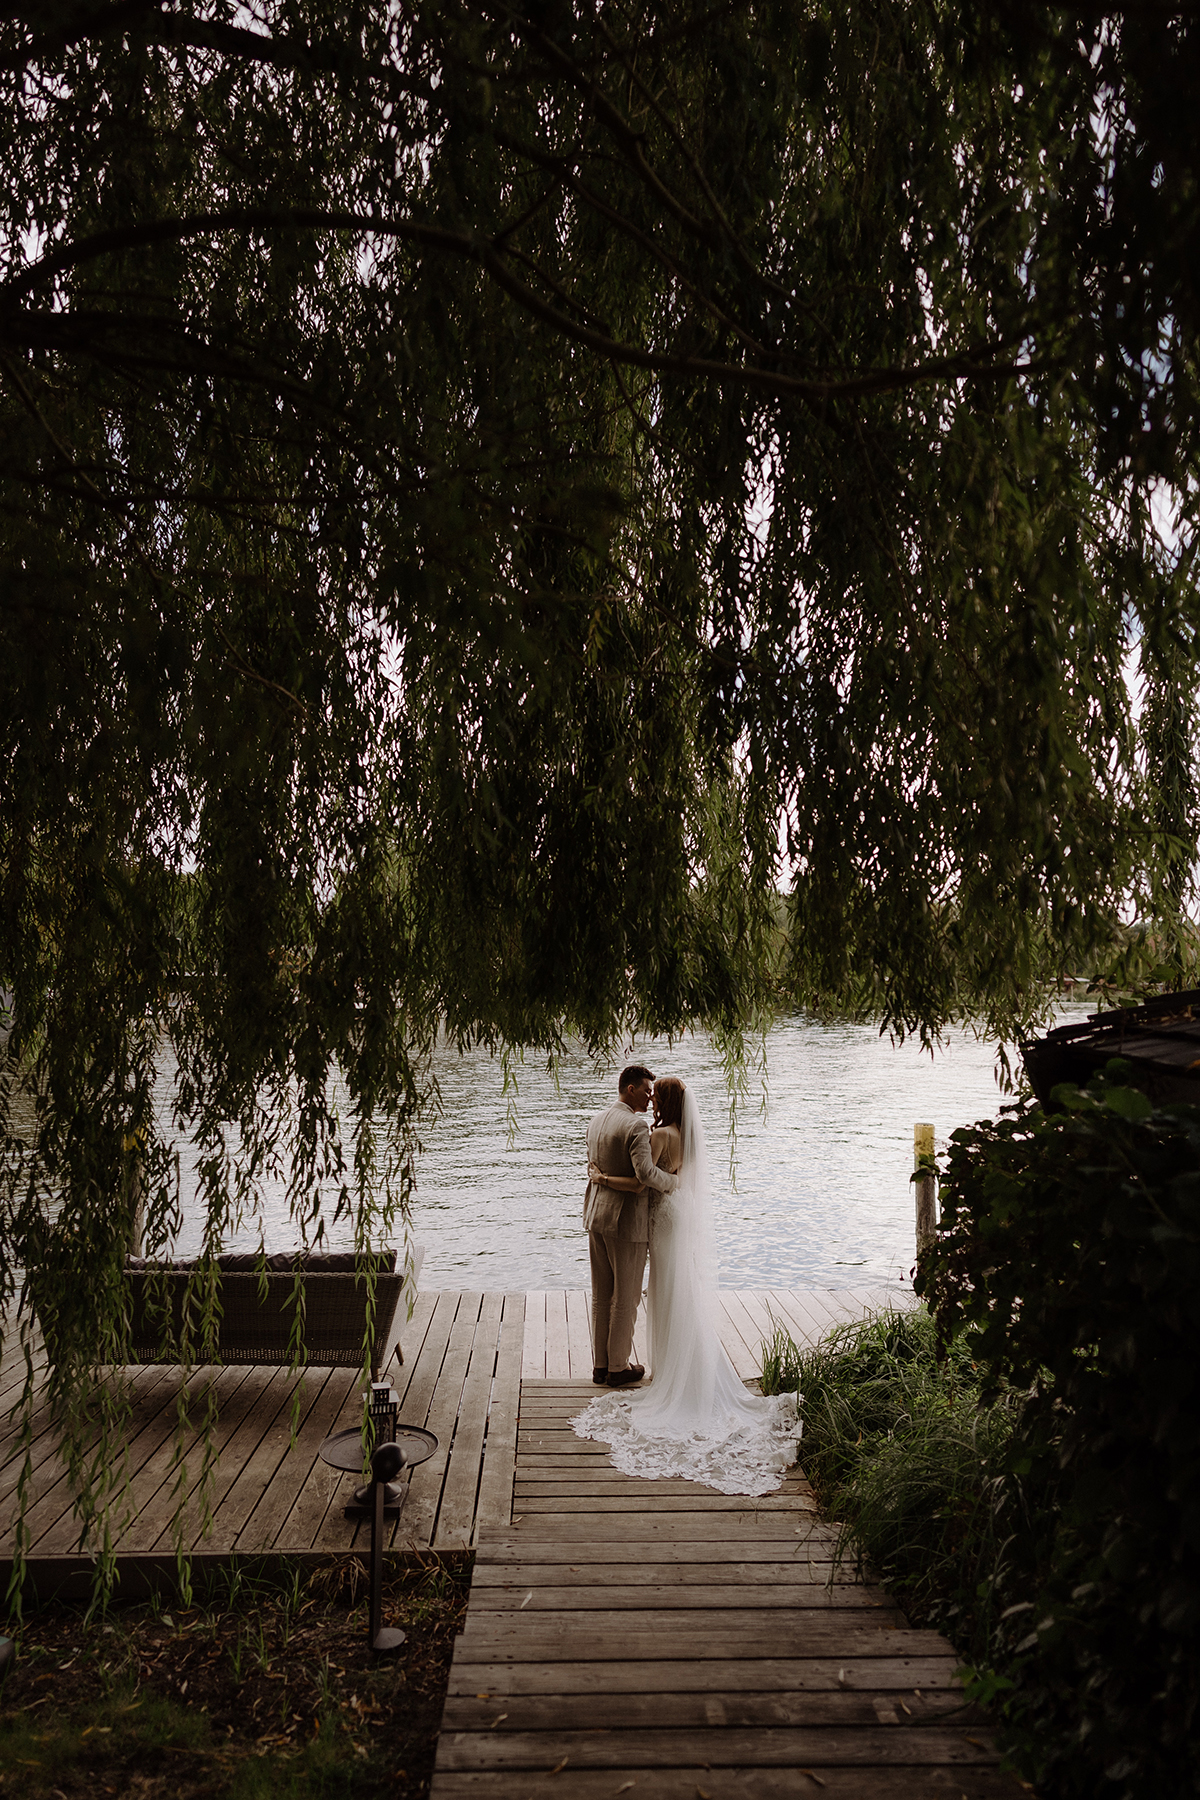 Remise am See Hochzeit: Heiraten im Boho Stil ist in dieser Hochzeitslocation in Potsdam am Wasser ideal möglich. Das Brautpaar von hinten steht im Hochzeitsfotoshooting ganz natürlich mit Blick auf den Schwielowsee. Entdecke diese Hochzeitsreportage im Blog!